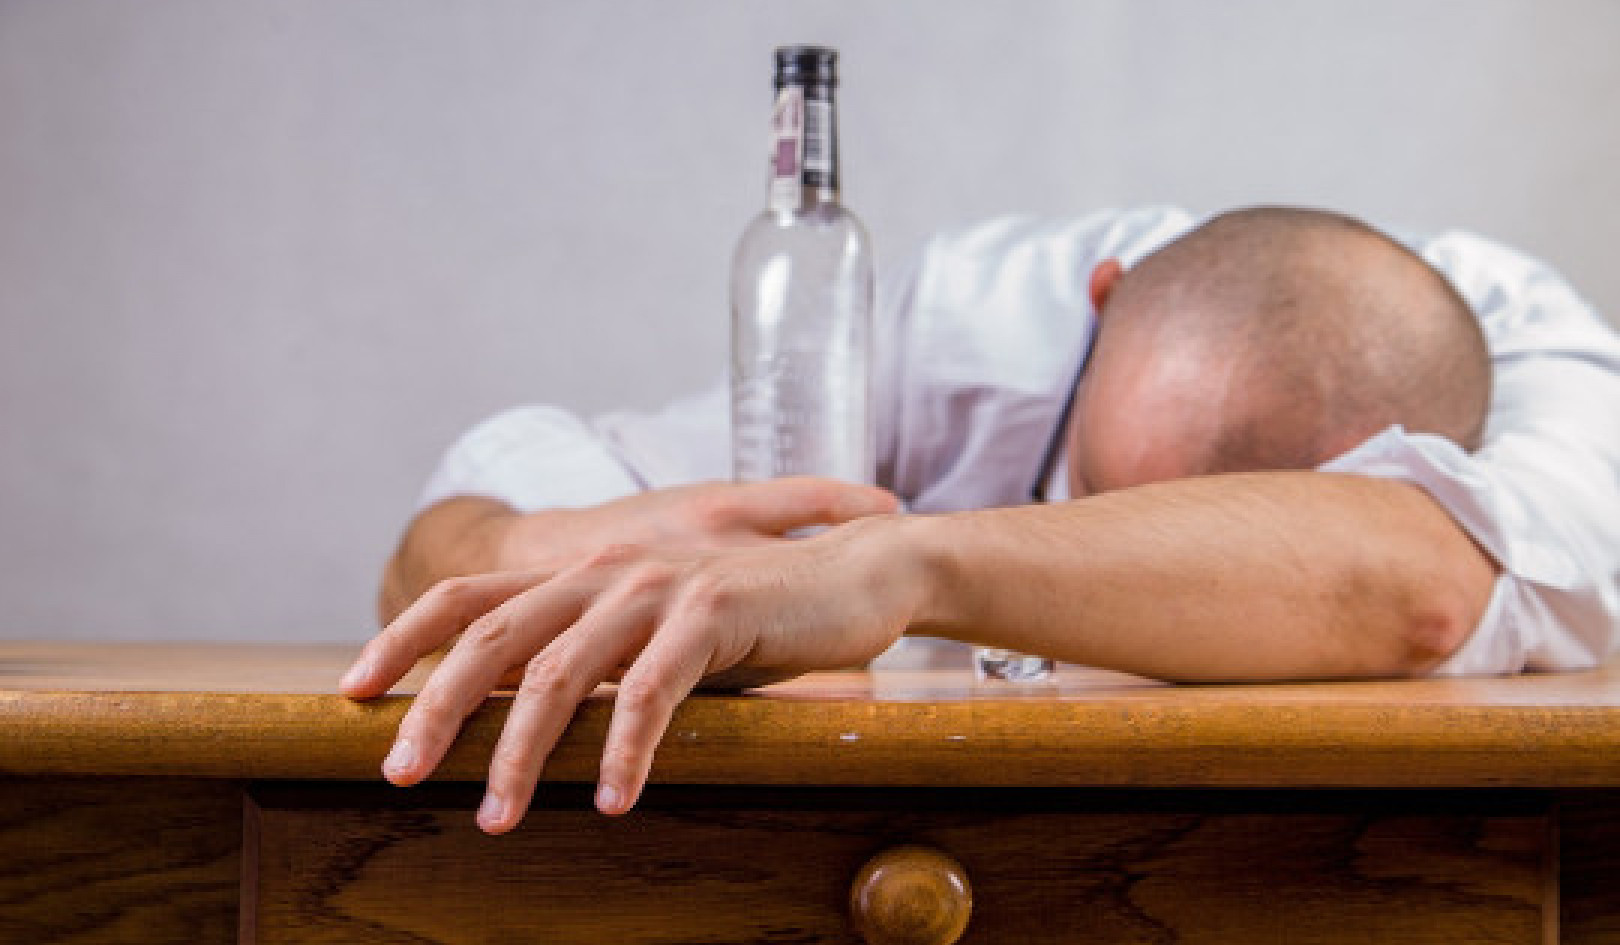 Wann ist die Wahrscheinlichkeit höher, dass Menschen viel trinken?